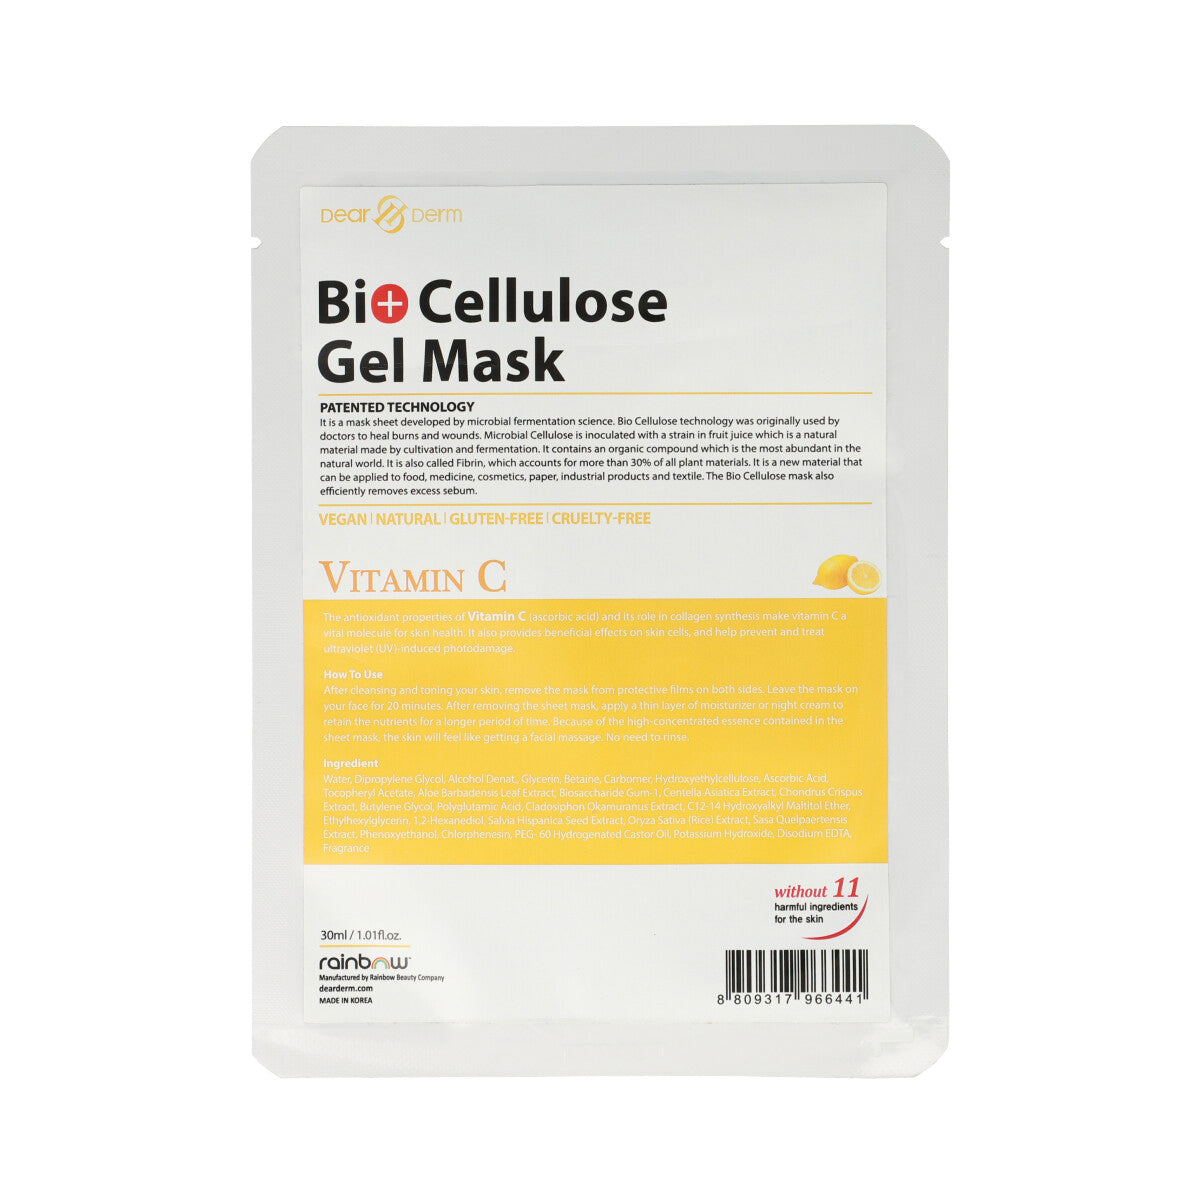 Bio Cellulose Gel Mask Vitaminc C